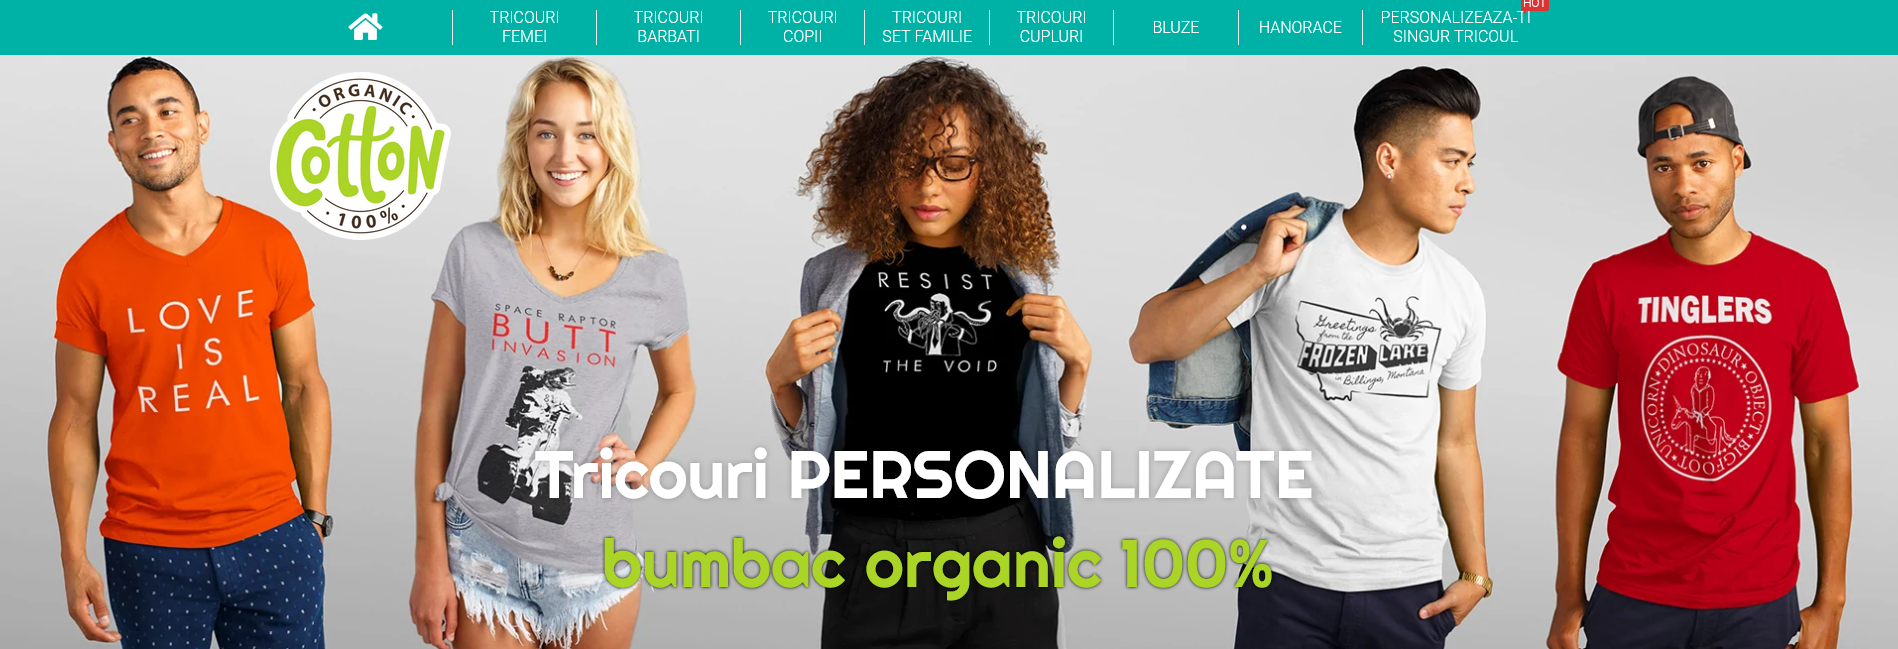 Dezvoltare magazin online tricouri personalizate